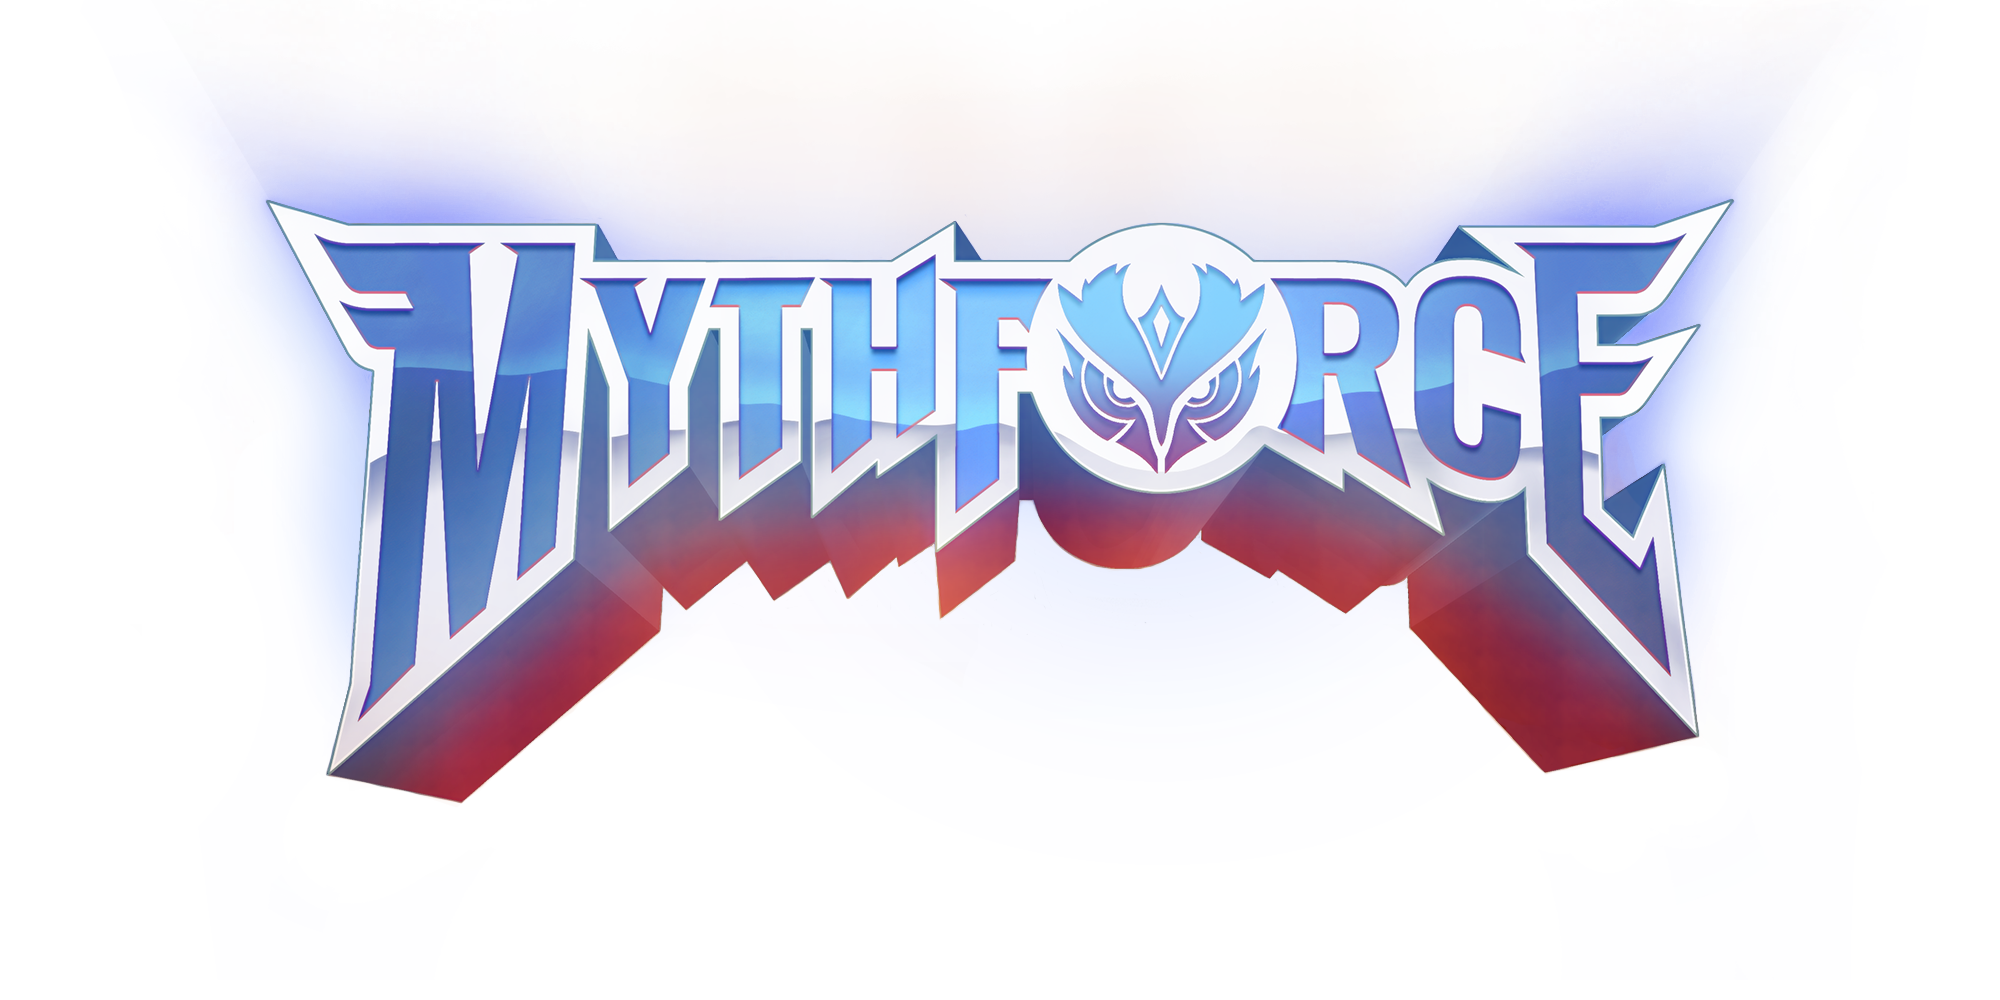 MythForce Logo